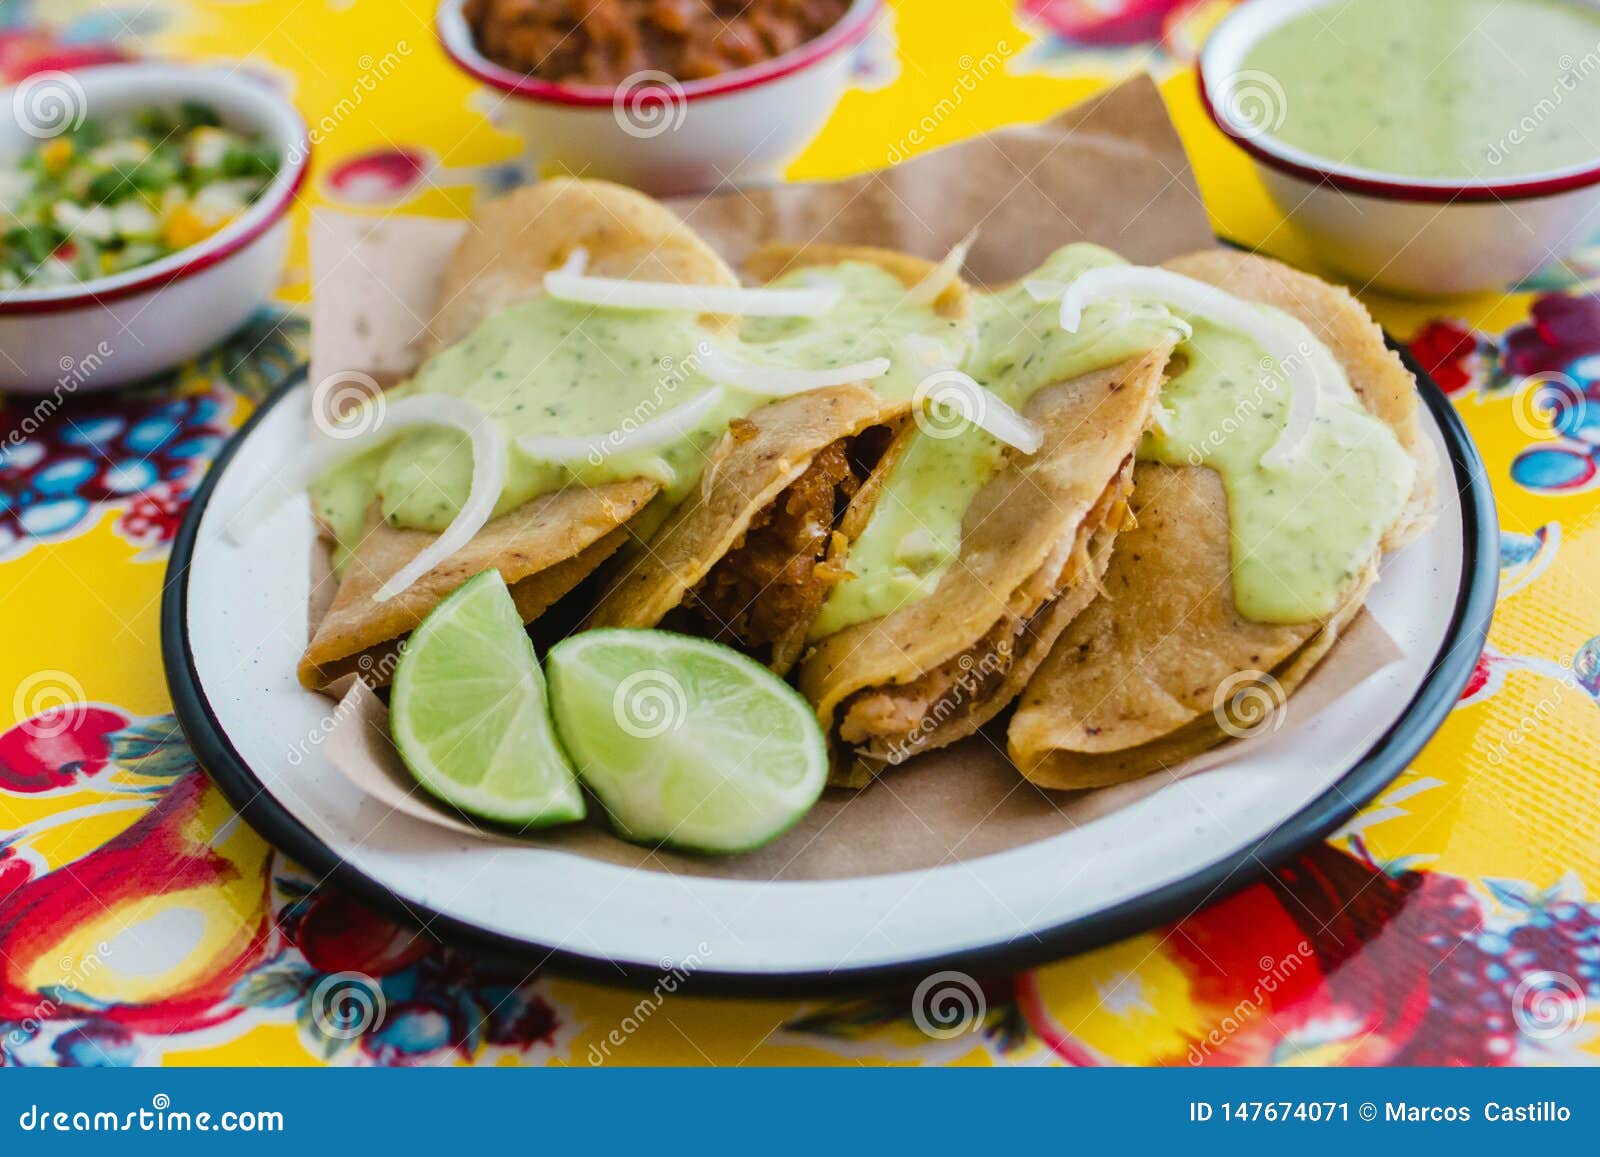 tacos de canasta is traditional mexican food in mexico city